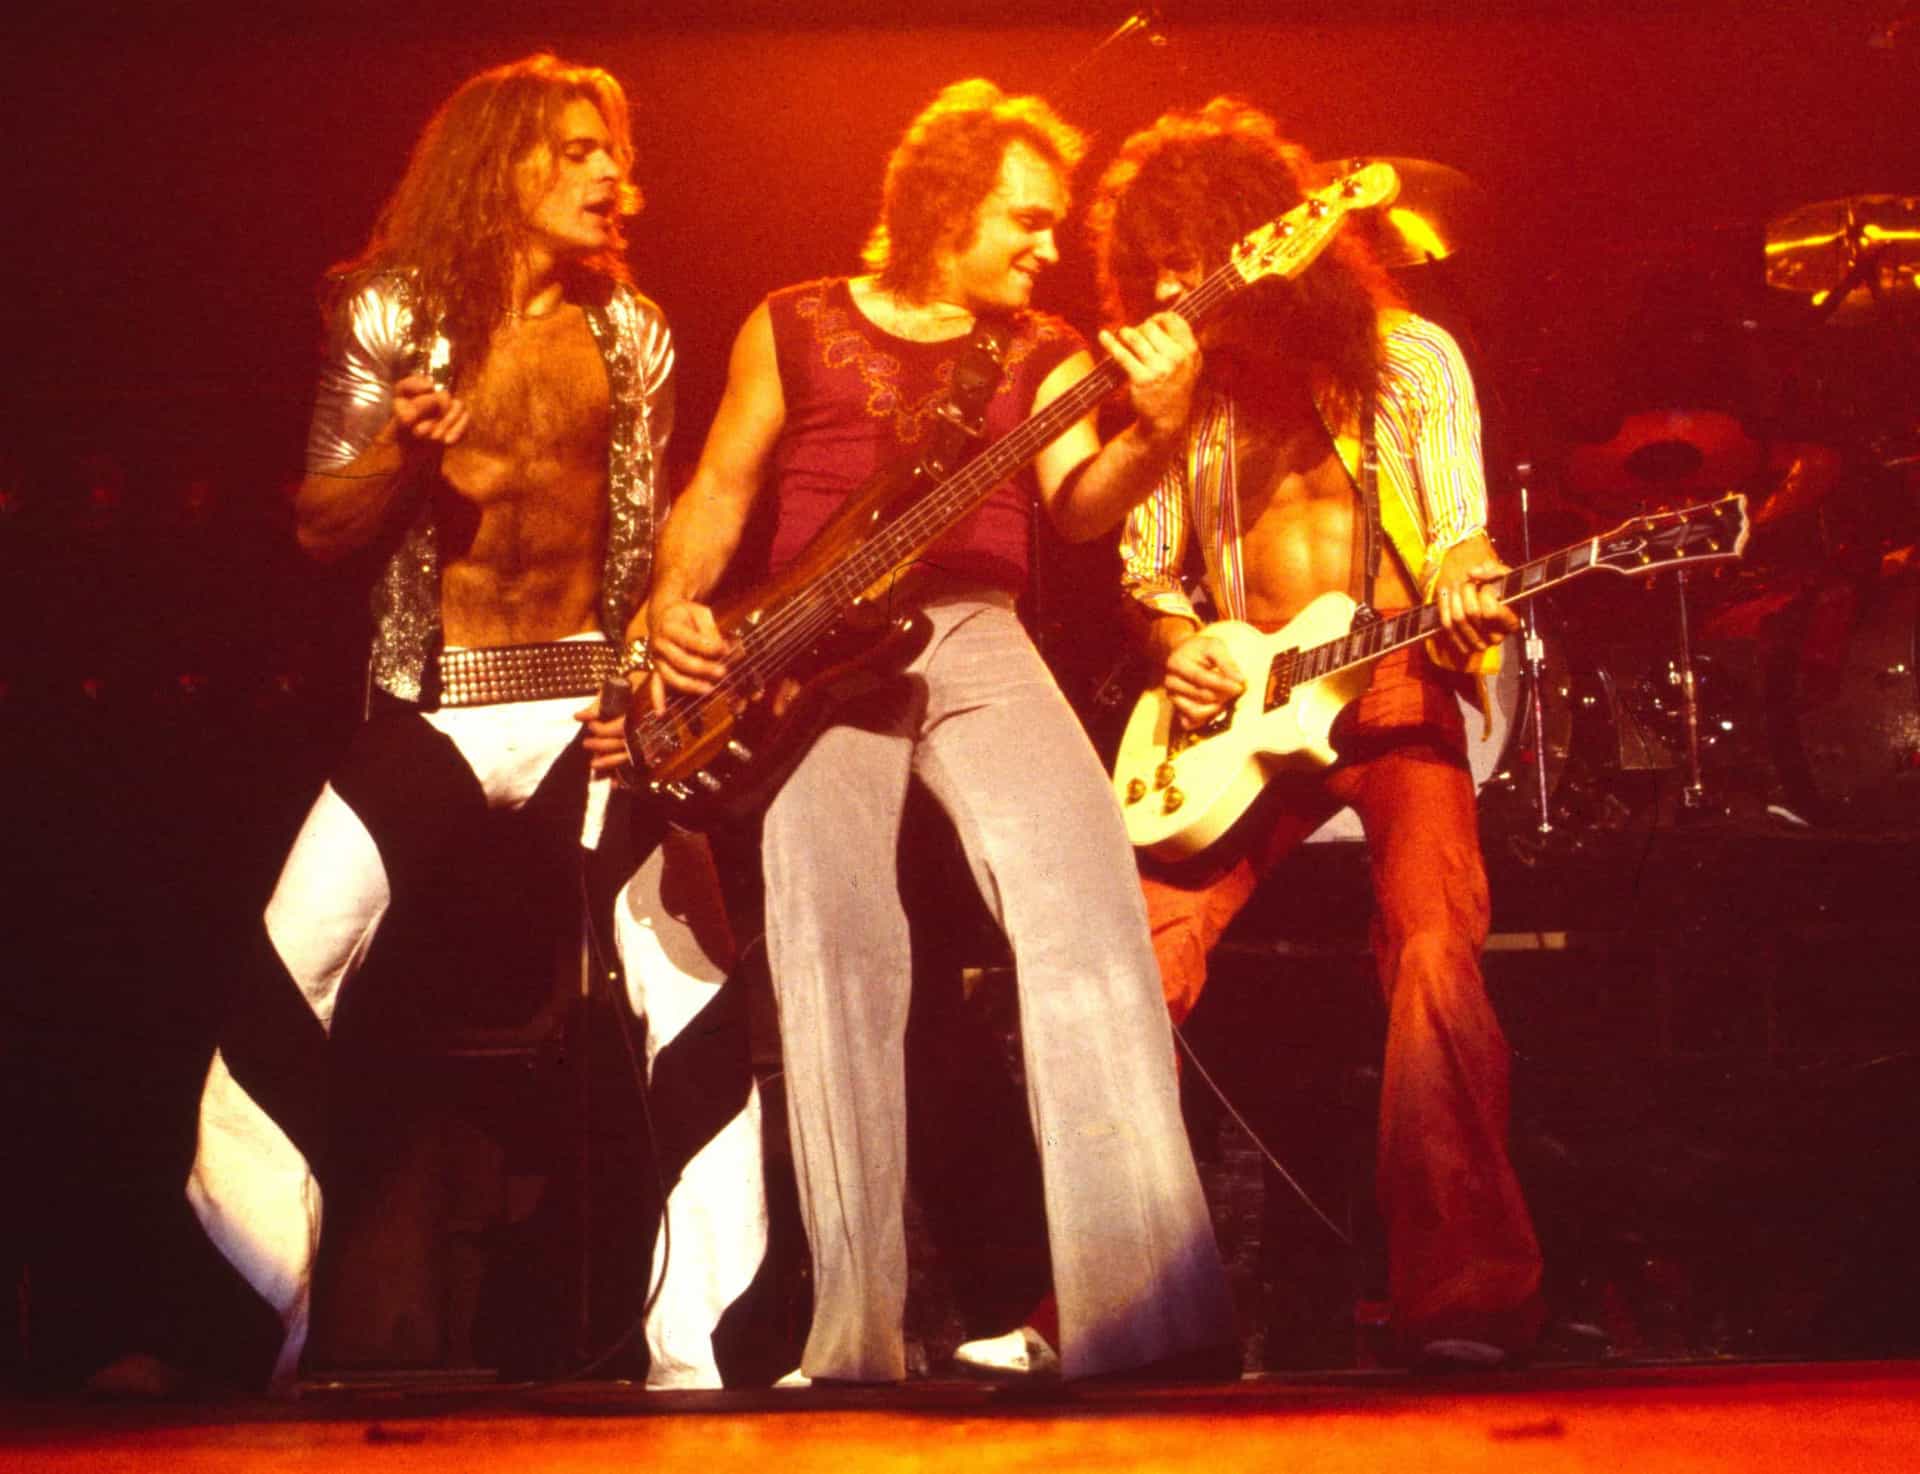 <p>"Runnin' with the Devil" vom gleichnamigen Debüt-Studioalbum von 1978 ist einer der bekanntesten Songs von Van Halen.</p>